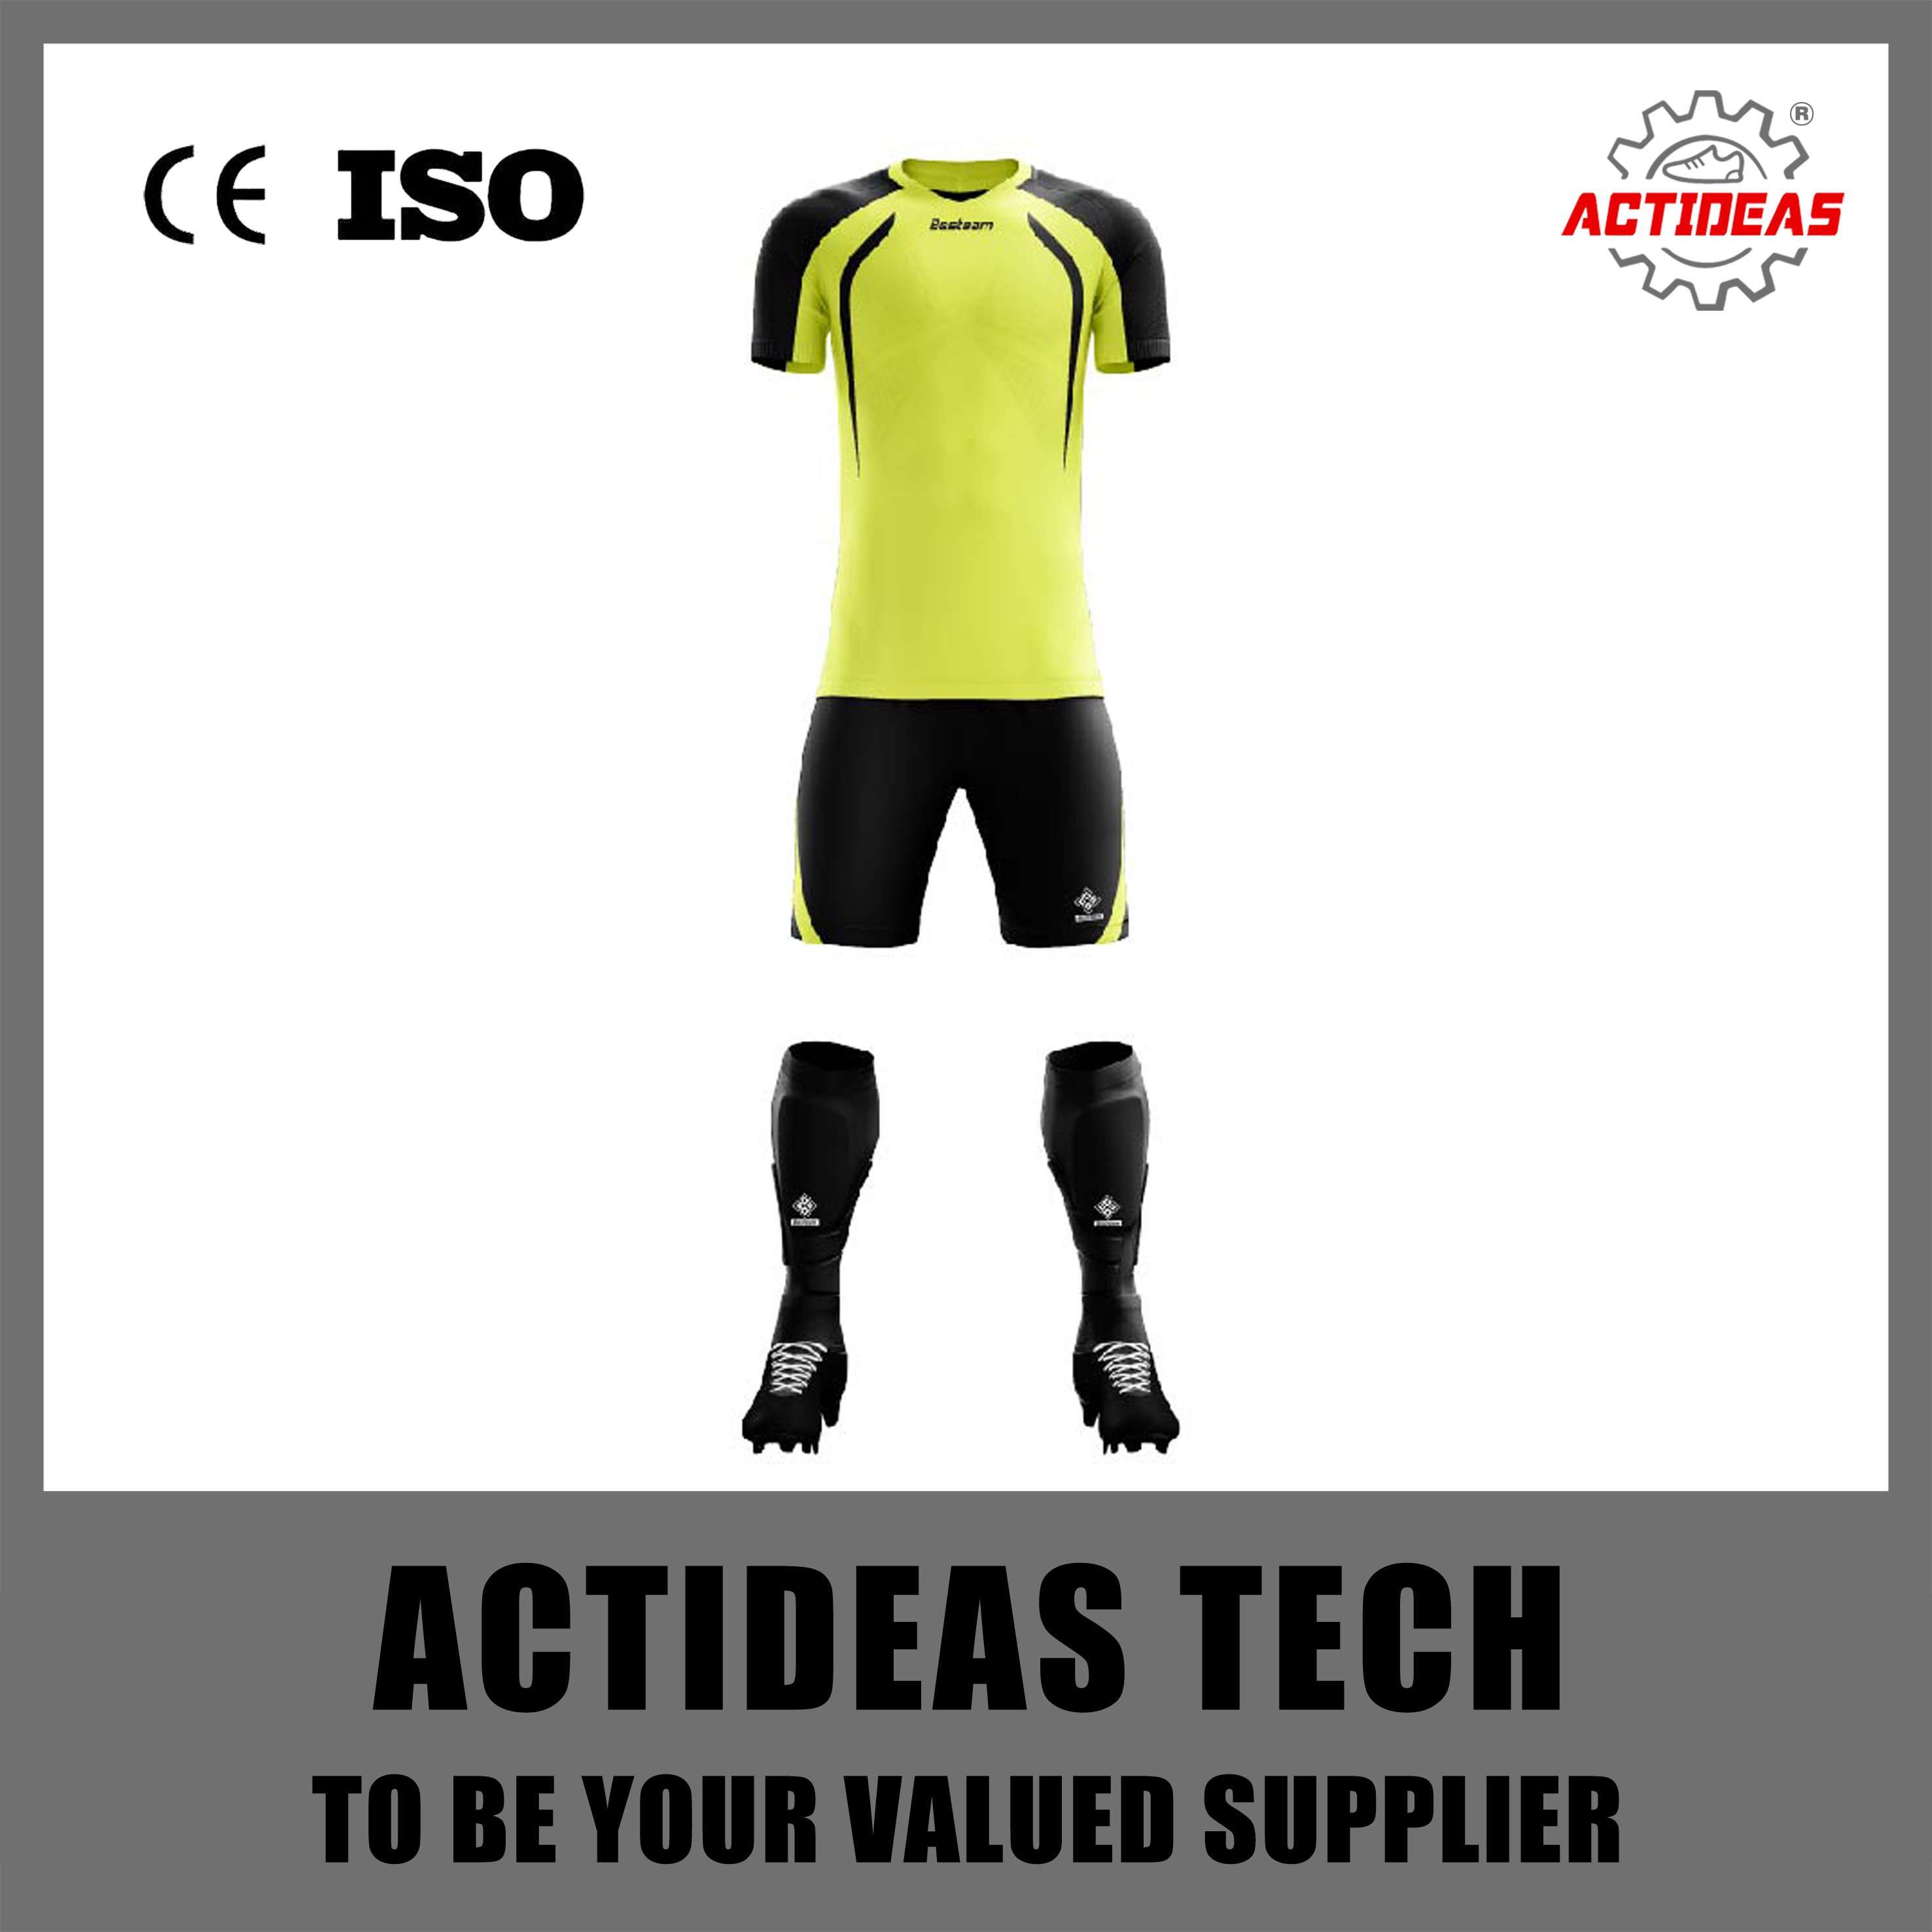 Fully Sublimation Custom Design Soccer Jerseys Football Kit Soccer Wear